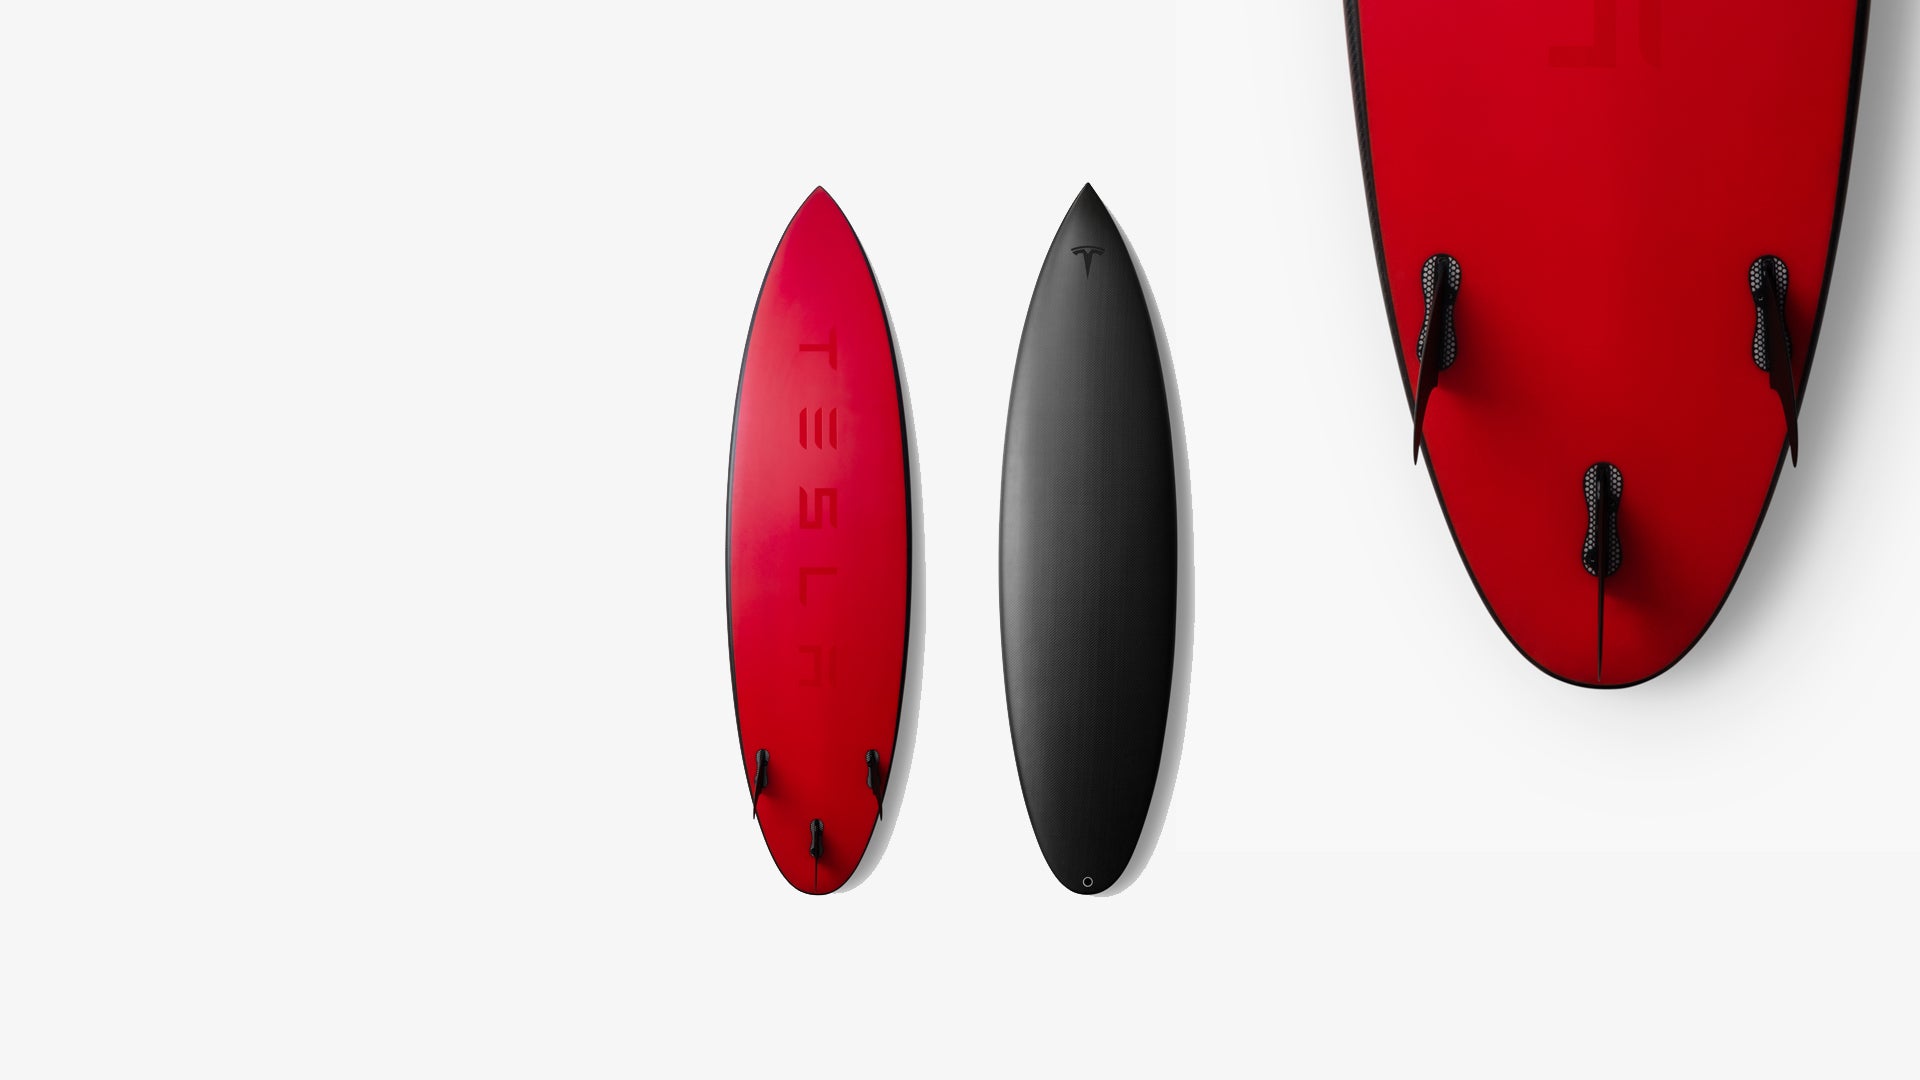 Cowabunga, Dude! Tesla is Now Selling Surfboards